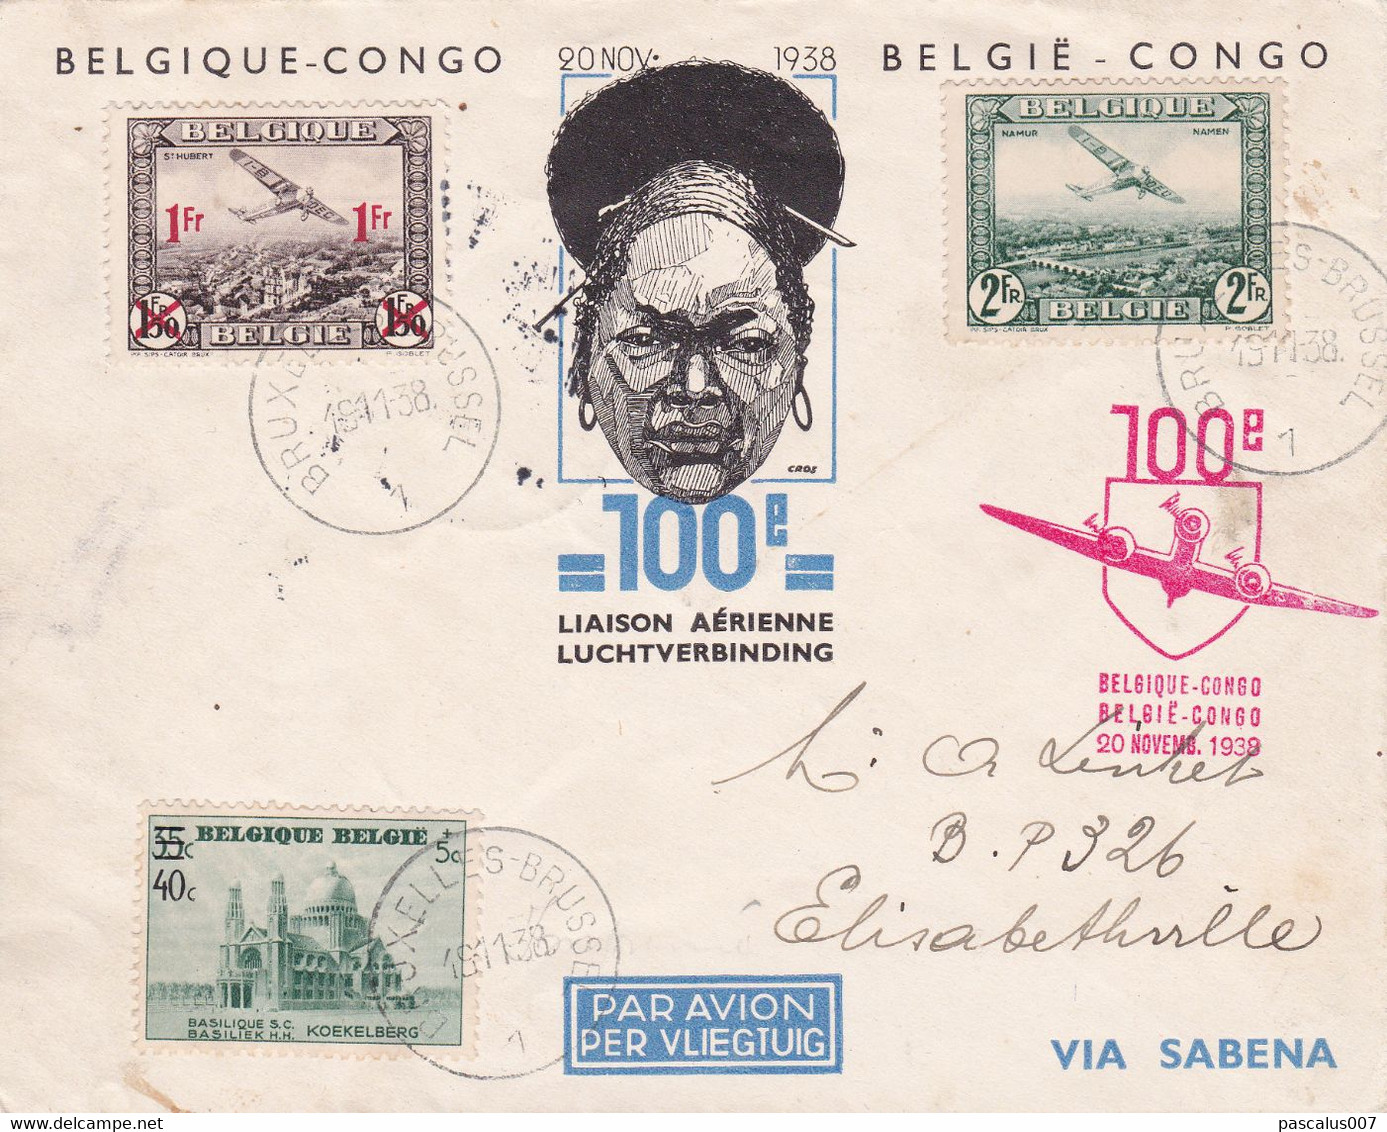 B01-285 Belgique Congo 100e Liaison Aérienne Sabena 18-11-1938 Avion Via Léopoldville Sabena Cob 481 PA 3 6 Aérienne - ....-1951